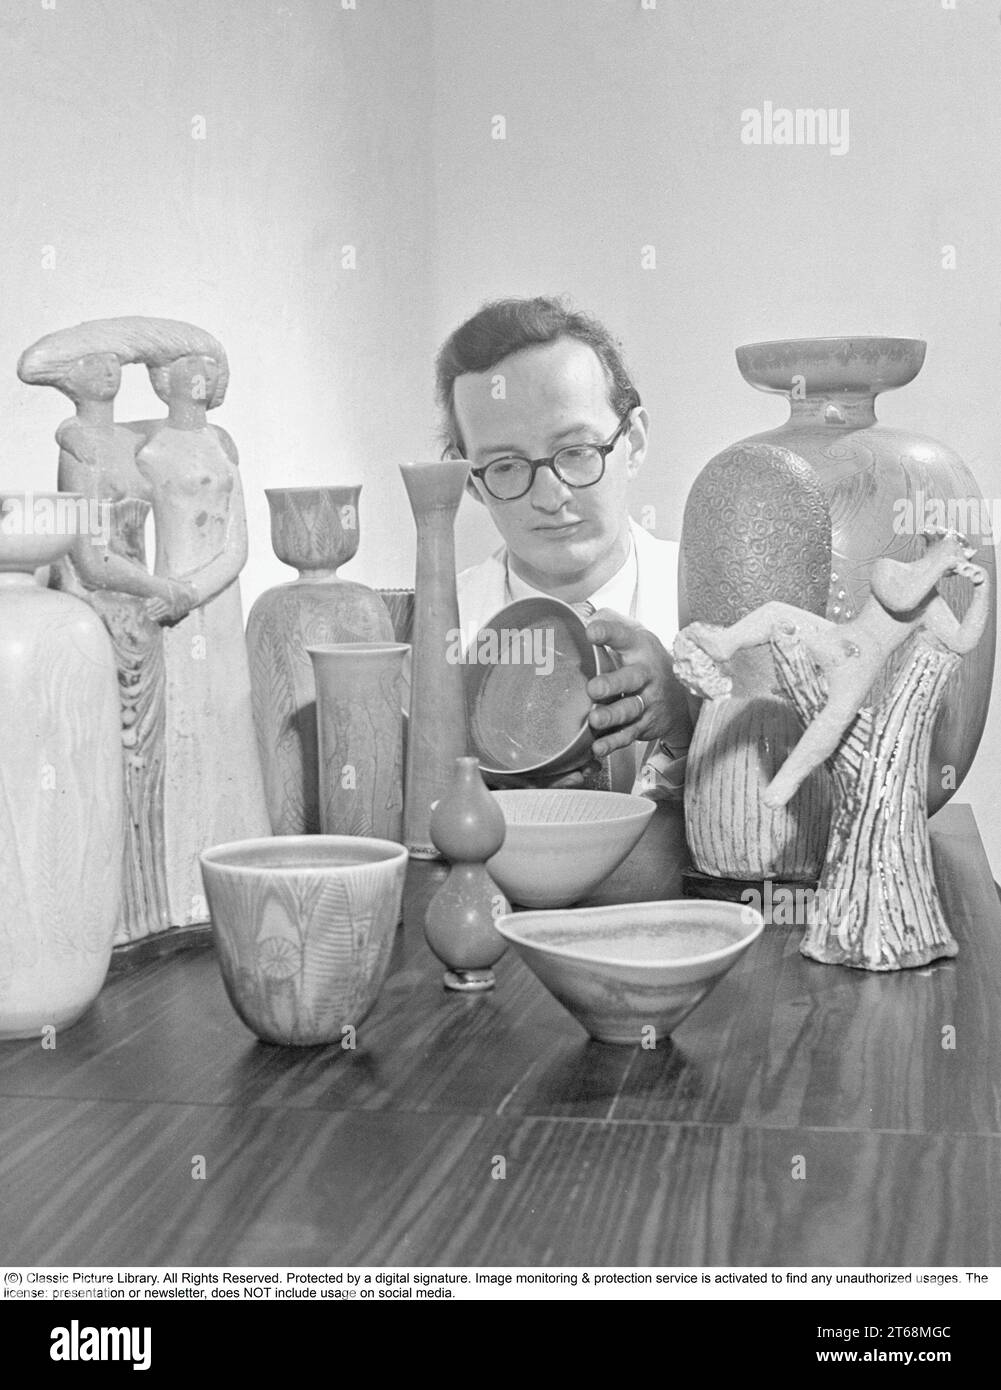 Stig Lindberg (* 17. August 1916 in Umeå, Schweden – 7. April 1982 in San Felice Circeo, Italien) war ein schwedischer Keramikdesigner, Glasdesigner, Textildesigner, Industriedesigner, Maler, und Illustrator. Lindberg, einer der wichtigsten schwedischen Nachkriegsdesigner, schuf während einer langen Karriere in der Keramikfabrik Gustavsberg skurrile Atelierkeramik und anmutige Tafellinien. Stig Lindberg studierte Malerei an der Hochschule für Kunst, Handwerk und Design. 1937 arbeitete er bei Wilhelm Kåge nach Gustavsberg. 1949 wurde er zum Nachfolger von Kåge als Art Director ernannt. Von diesem per Stockfoto